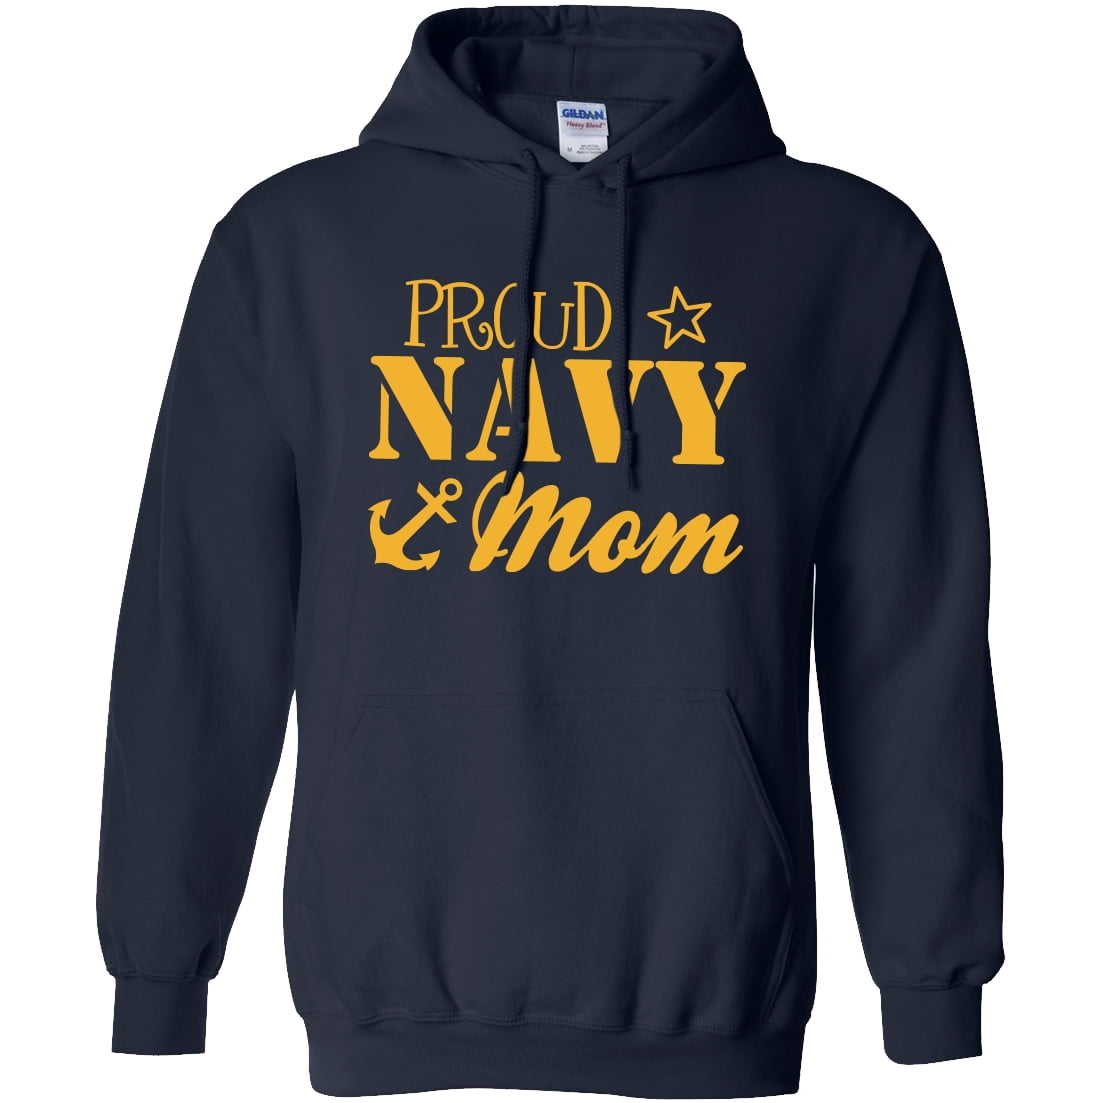 Proud Navy Mom Hooded Sweatshirt in Navy - Walmart.com